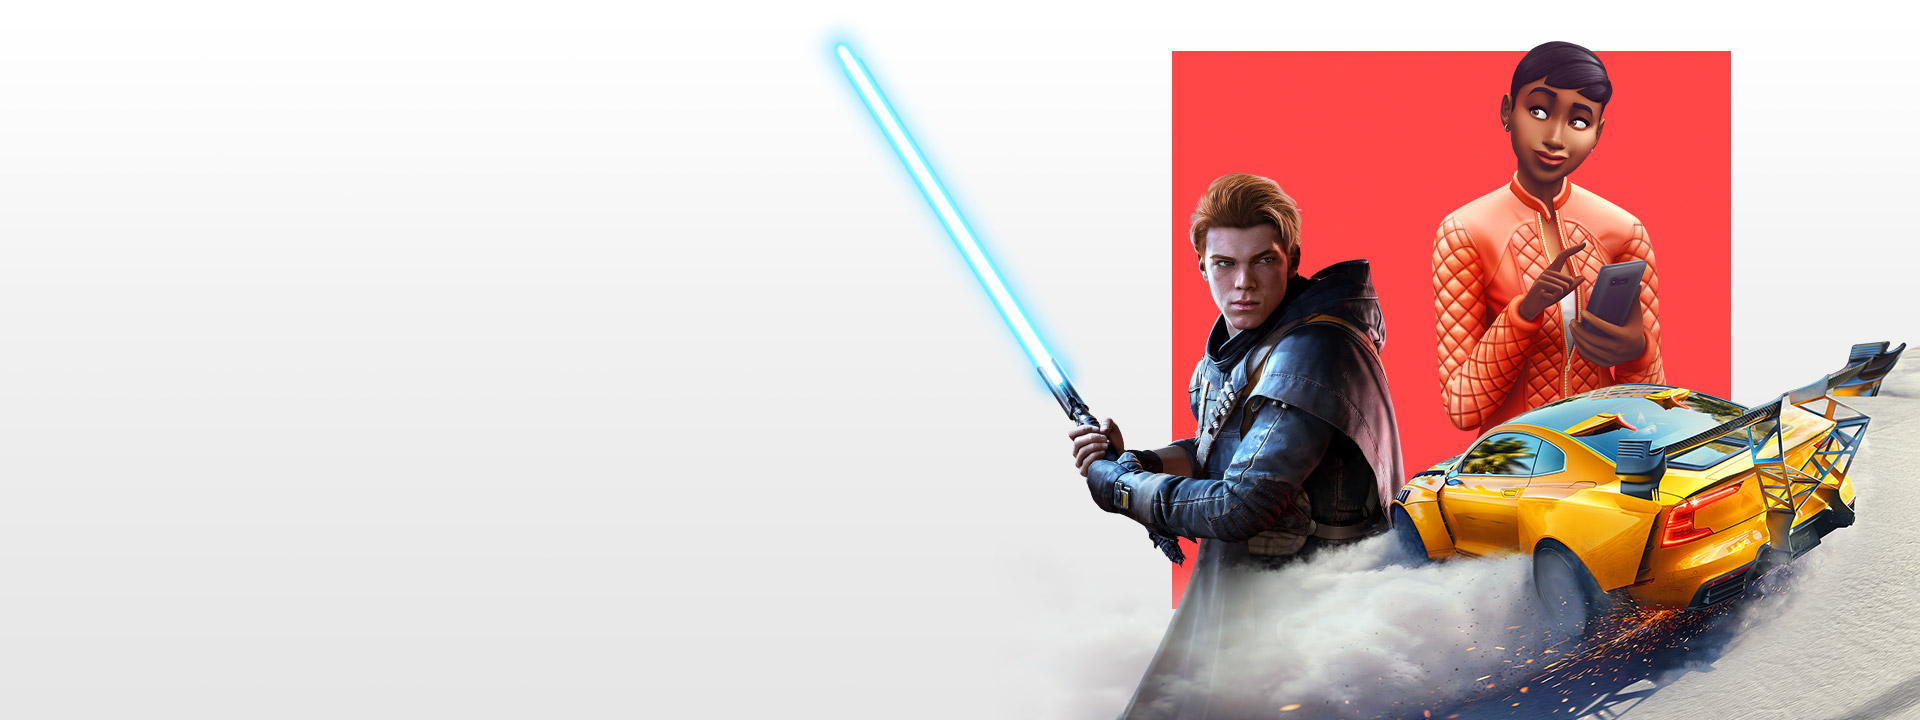 Aneka macam karakter dari berbagai game EA, termasuk Star Wars Jedi: Fallen Order, The Sims 4, dan Need For Speed Heat.